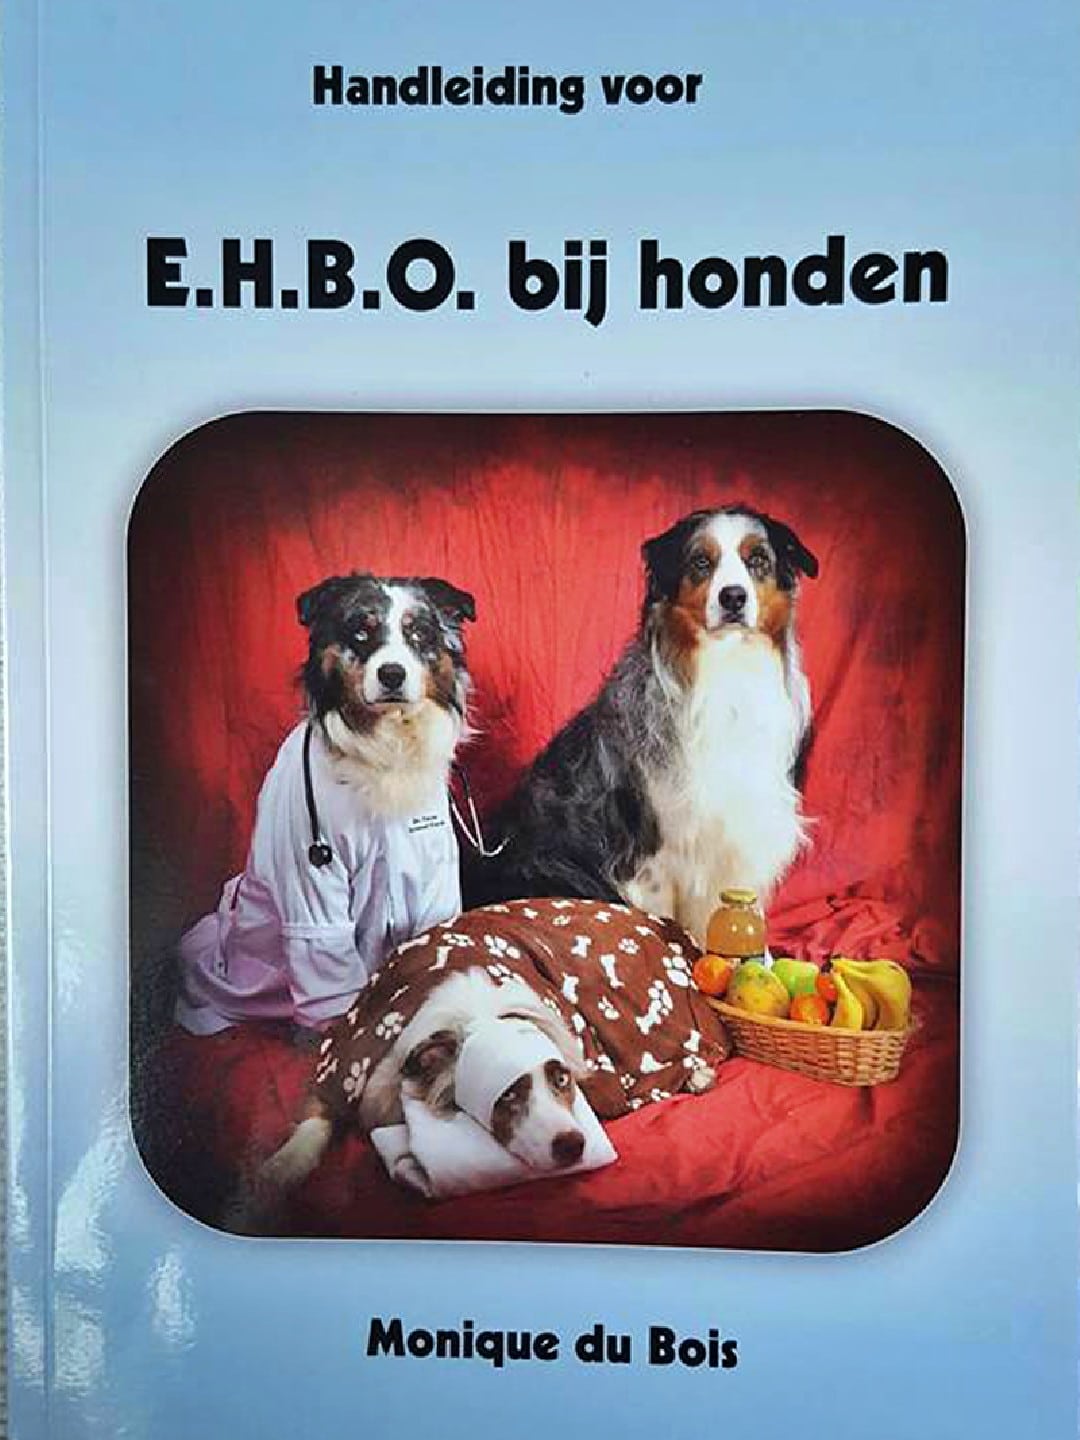 Handleiding E.H.B.O. honden | Kynologisch